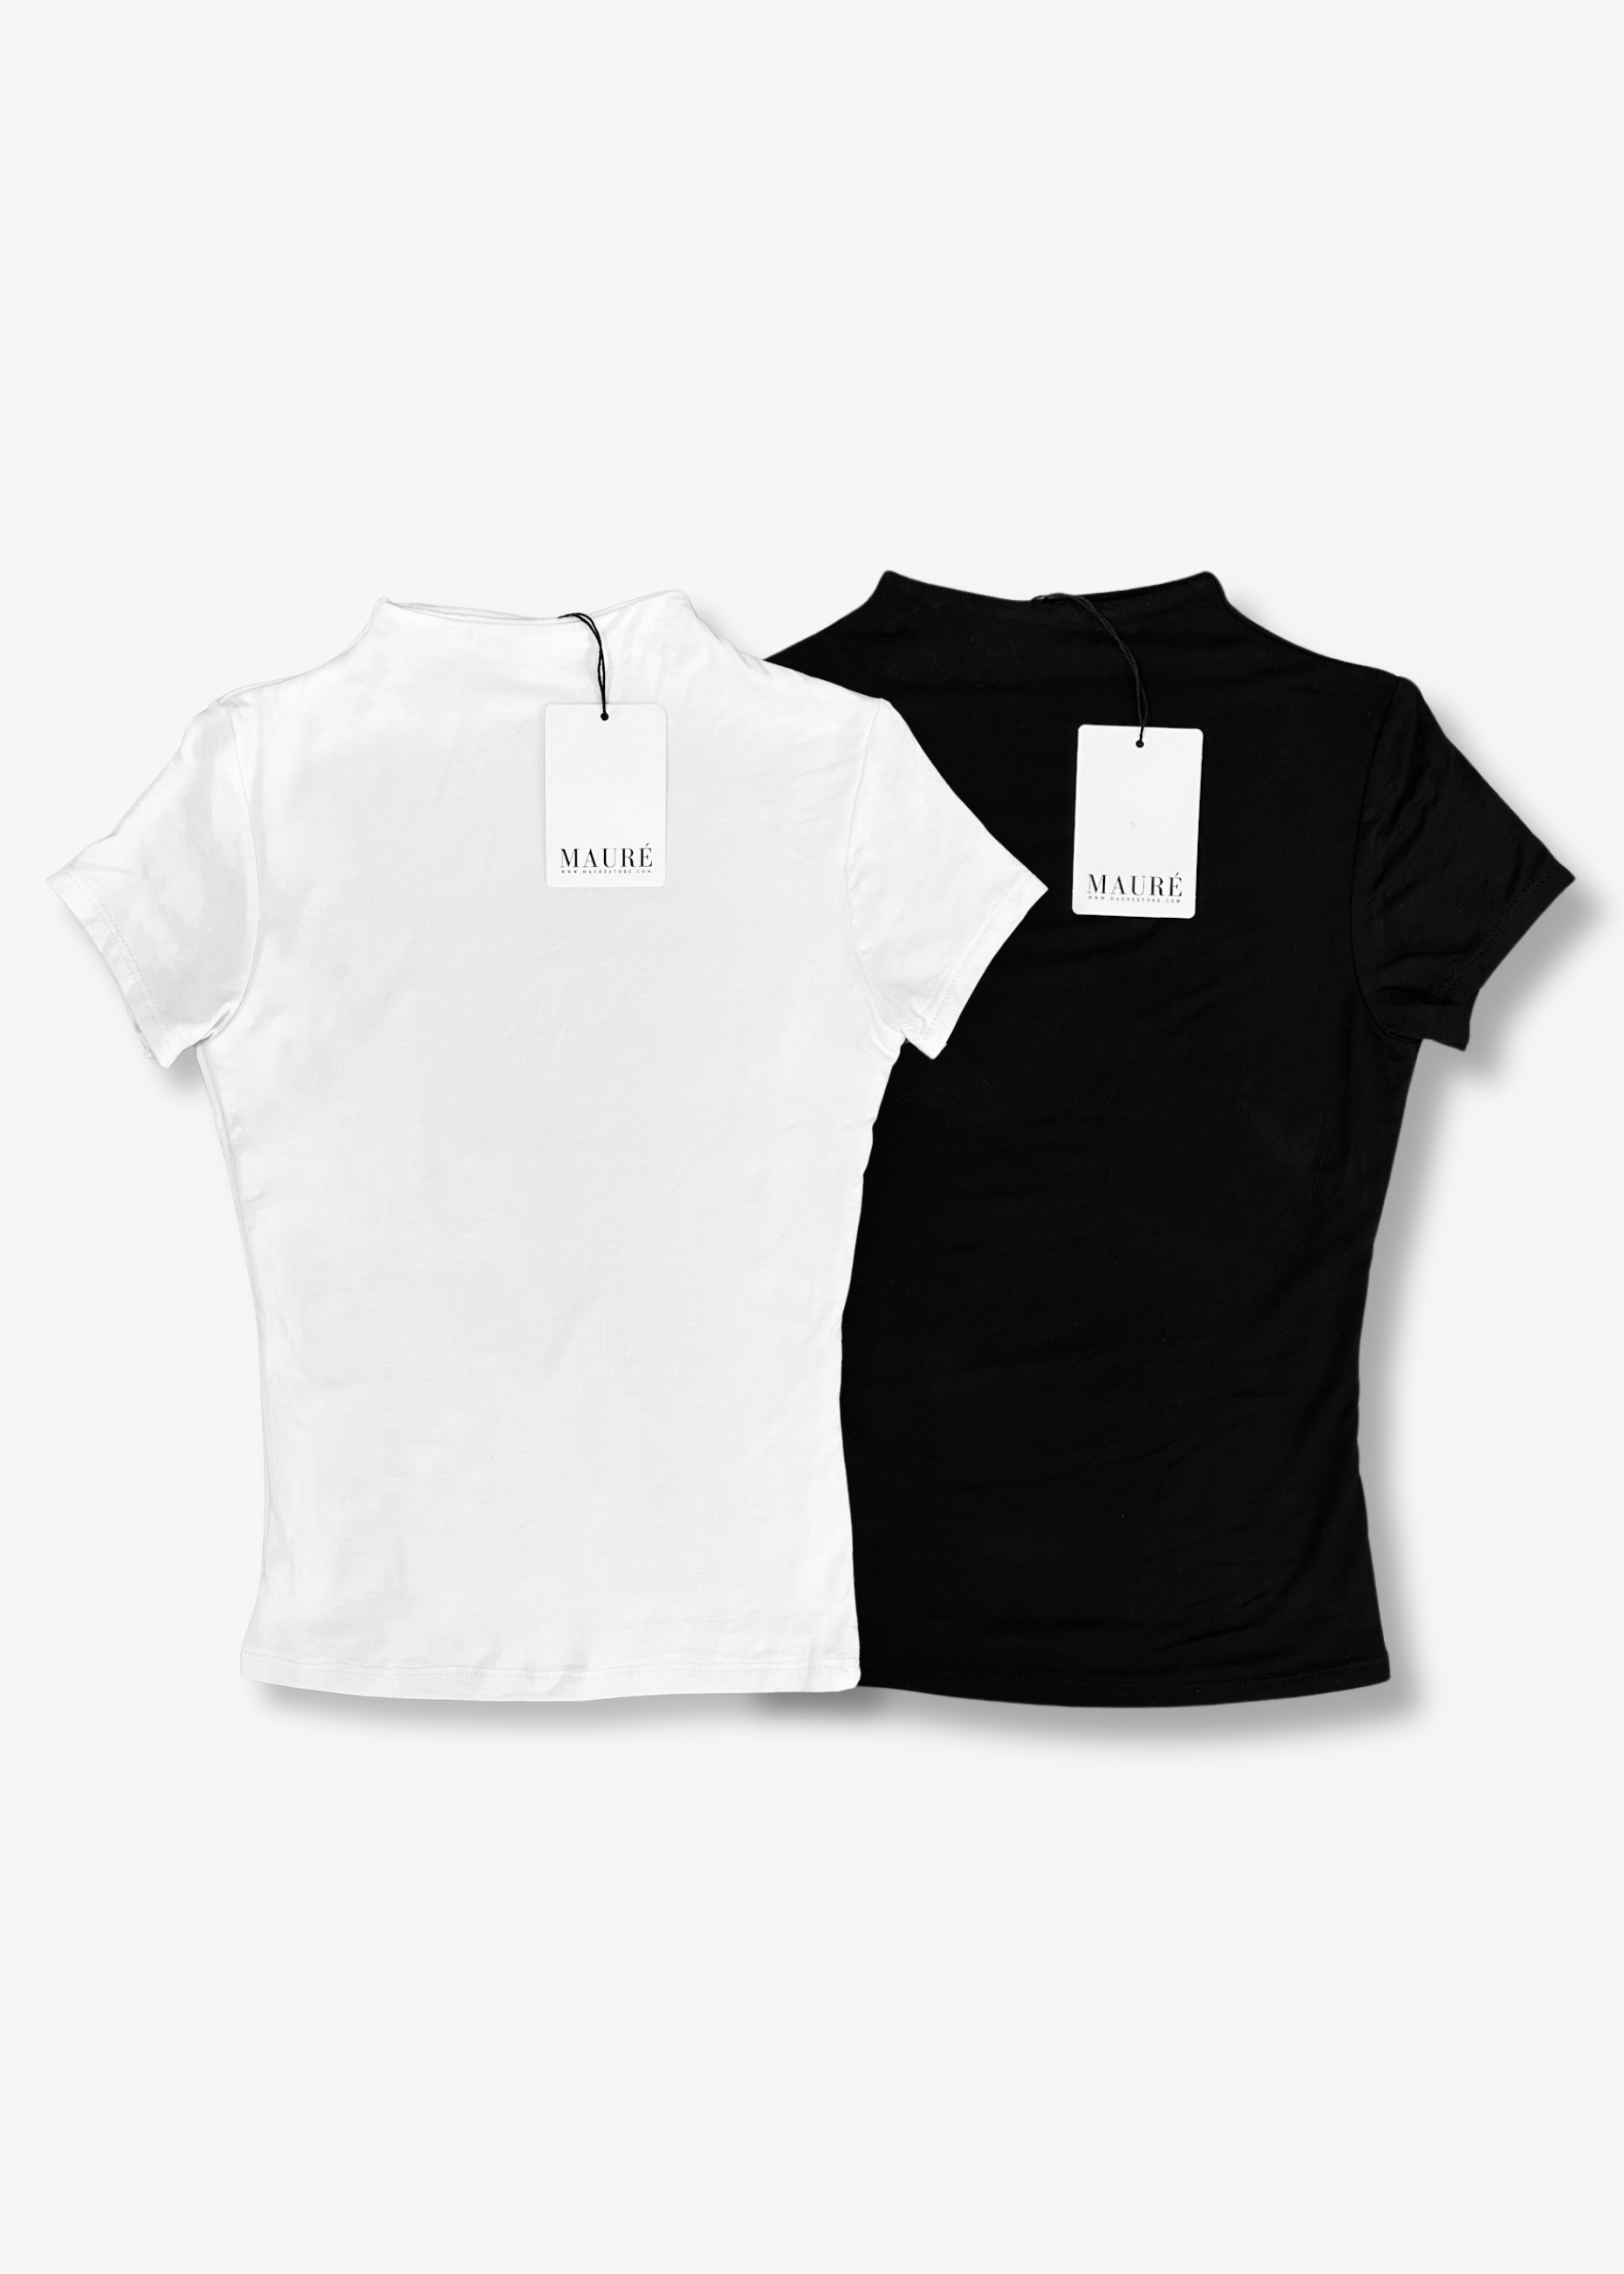 2-pack short sleeve tops long (classy) White & black